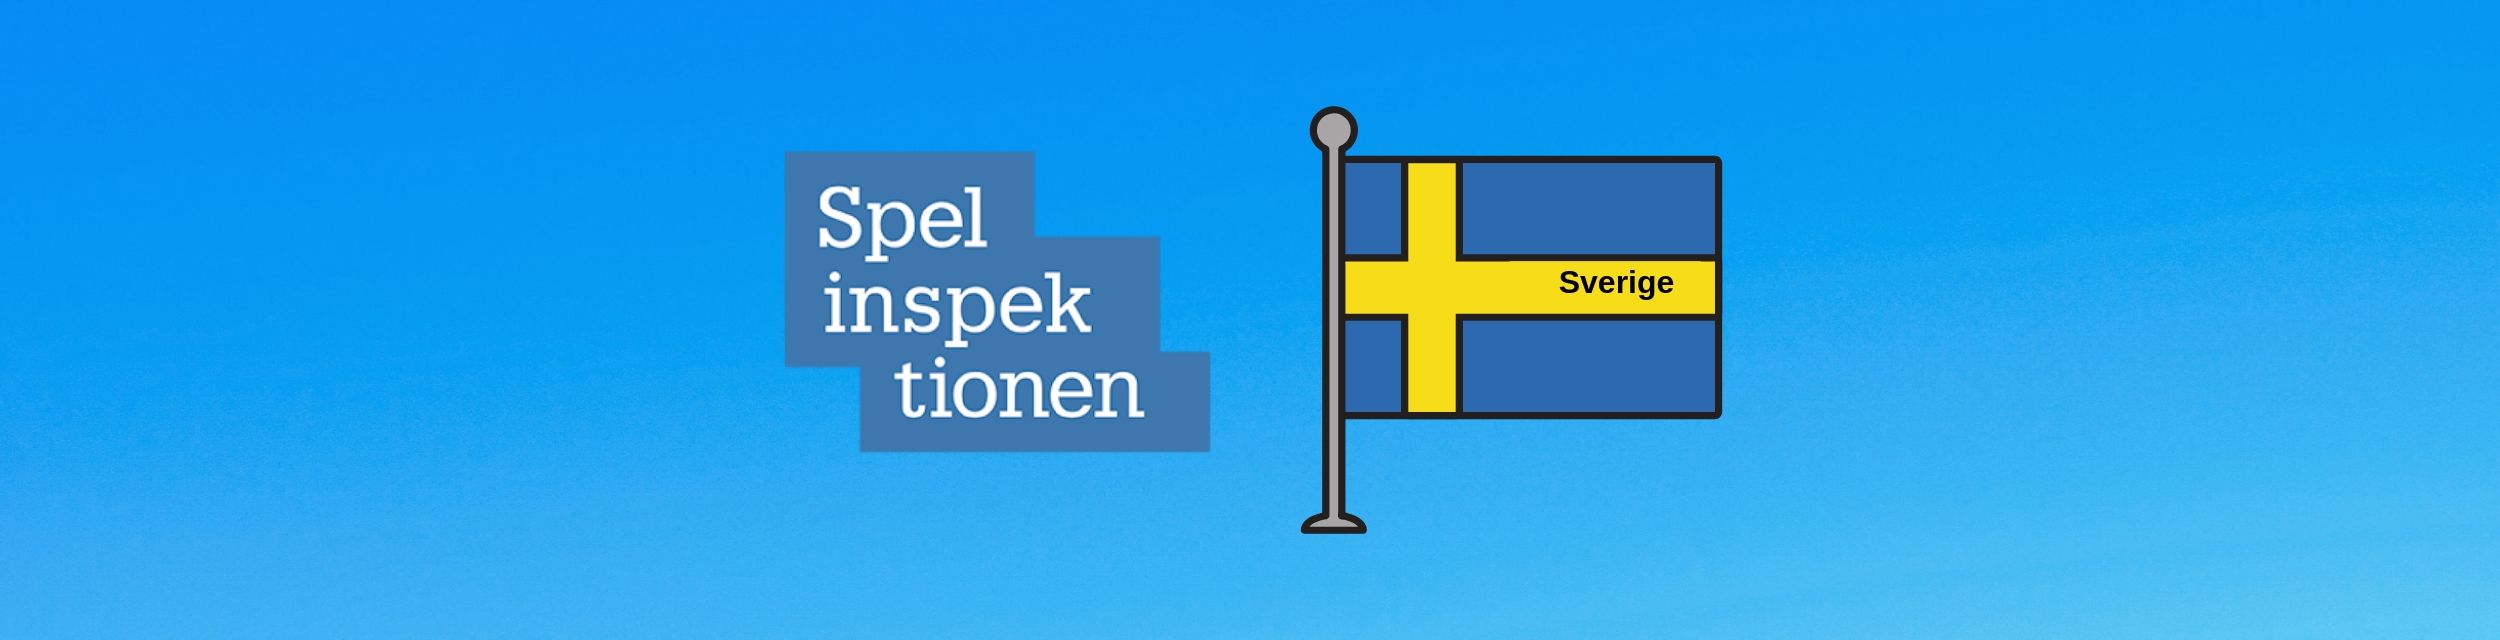 Spelinspektionens logga bredvid en svensk flagga med ordet Sverige